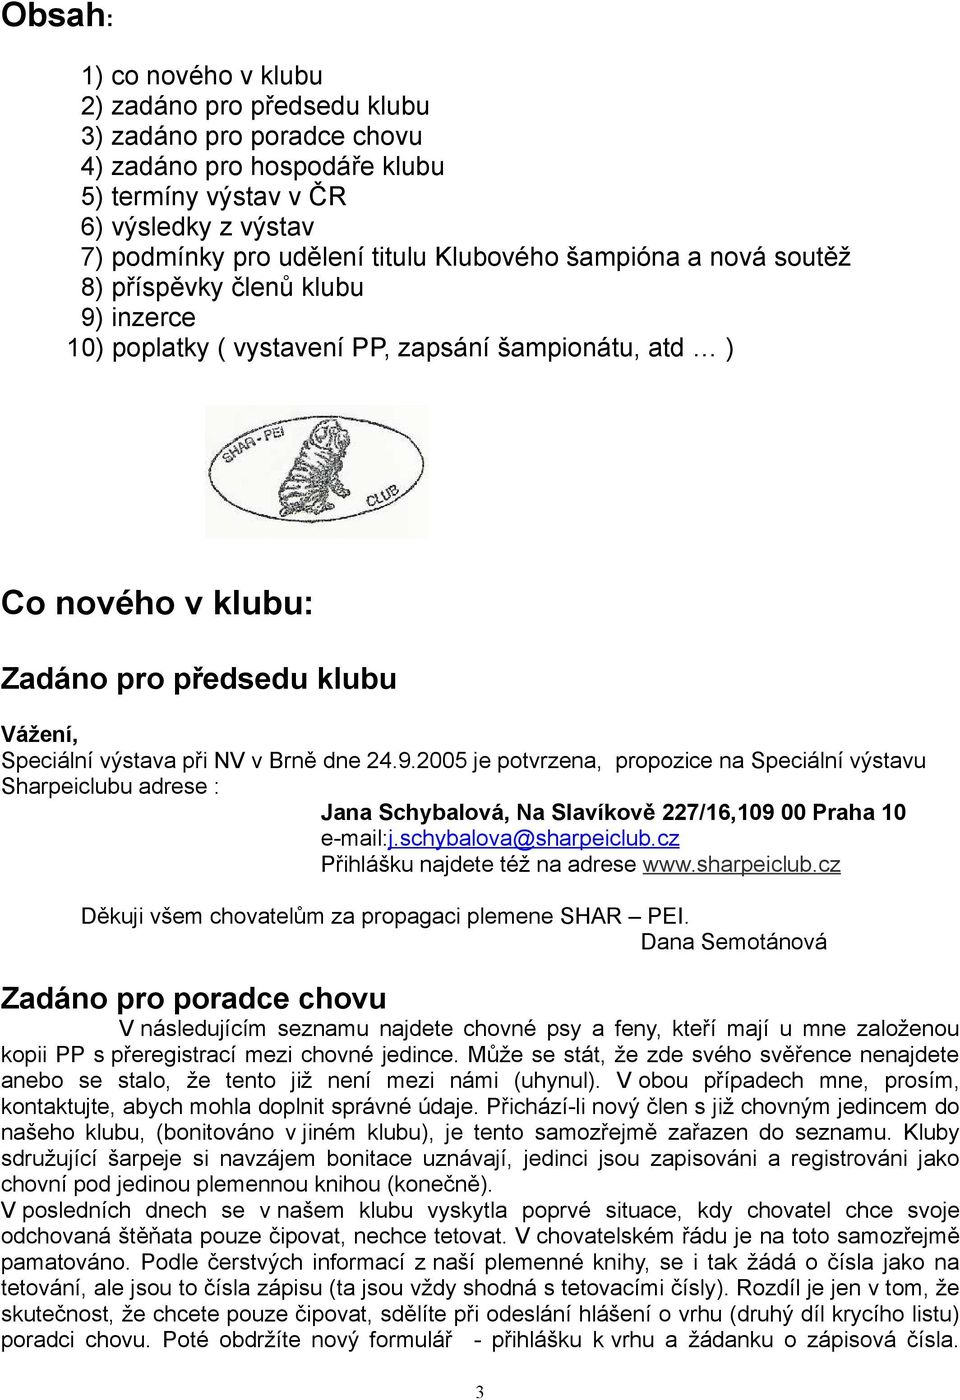 dne 24.9.2005 je potvrzena, propozice na Speciální výstavu Sharpeiclubu adrese : Jana Schybalová, Na Slavíkově 227/16,109 00 Praha 10 e-mail:j.schybalova@sharpeiclub.